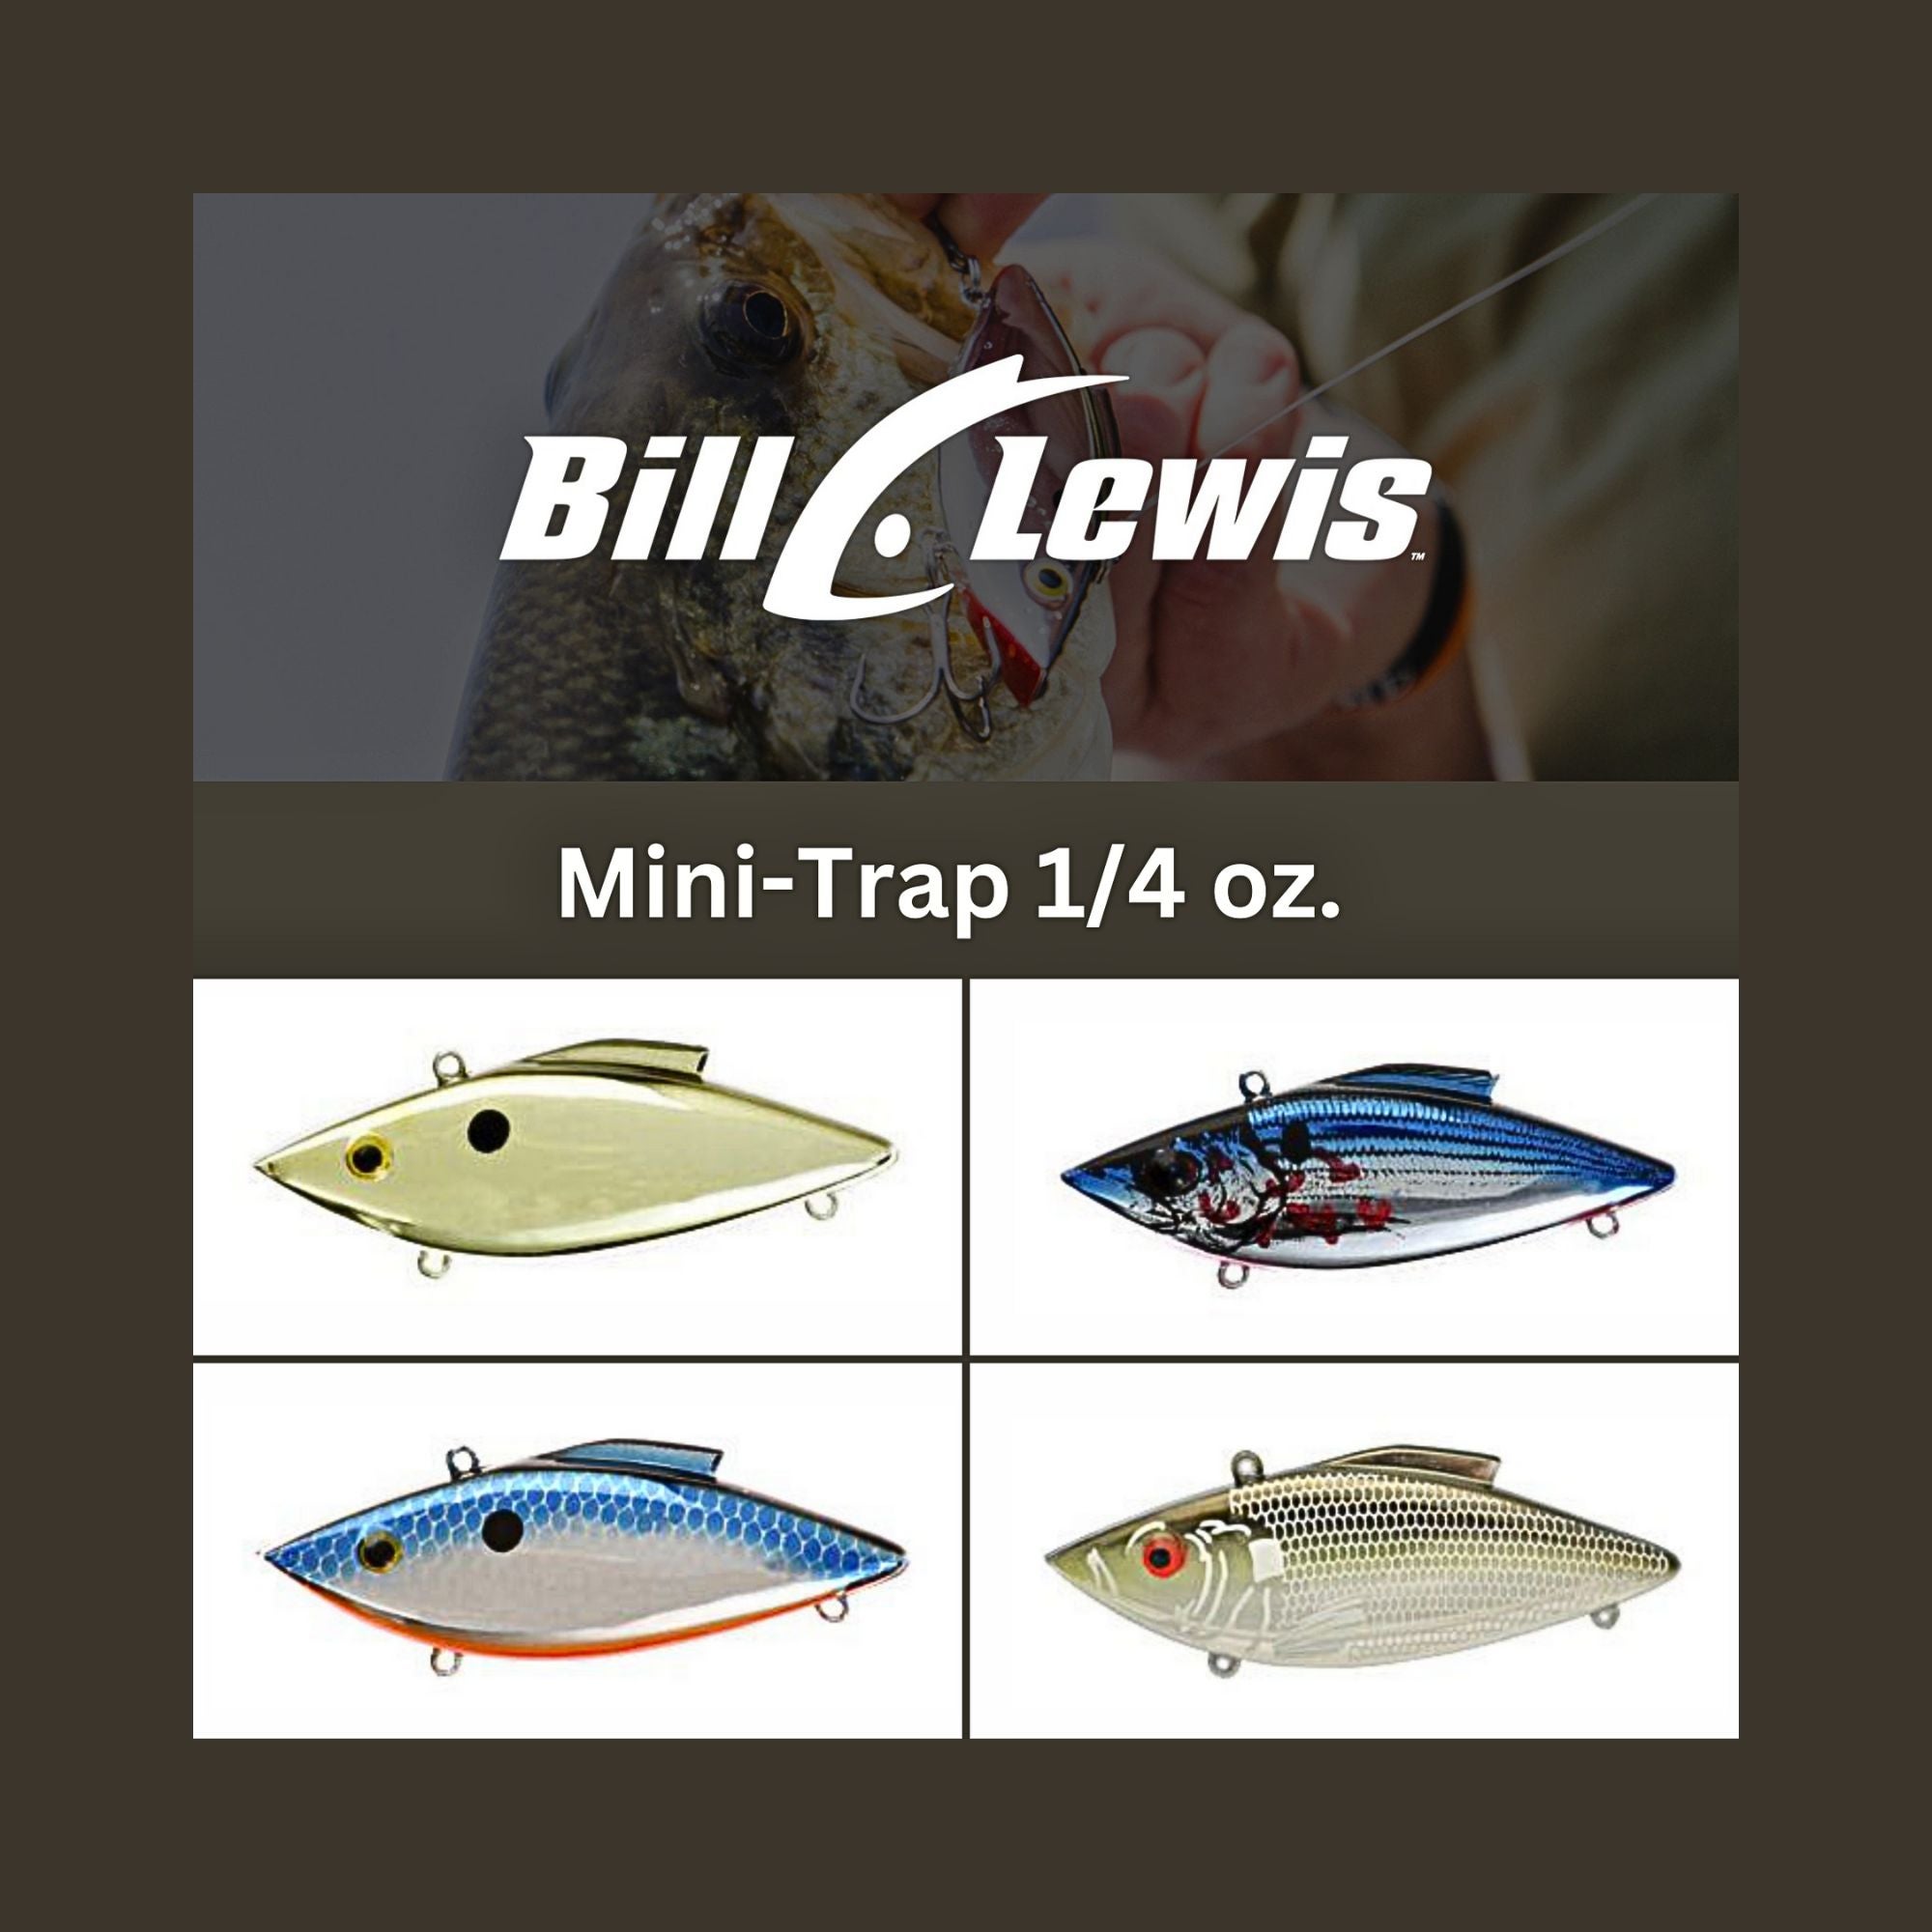 Mini-Trap Lipless Crankbait, 1/4 oz, Bill Lewis